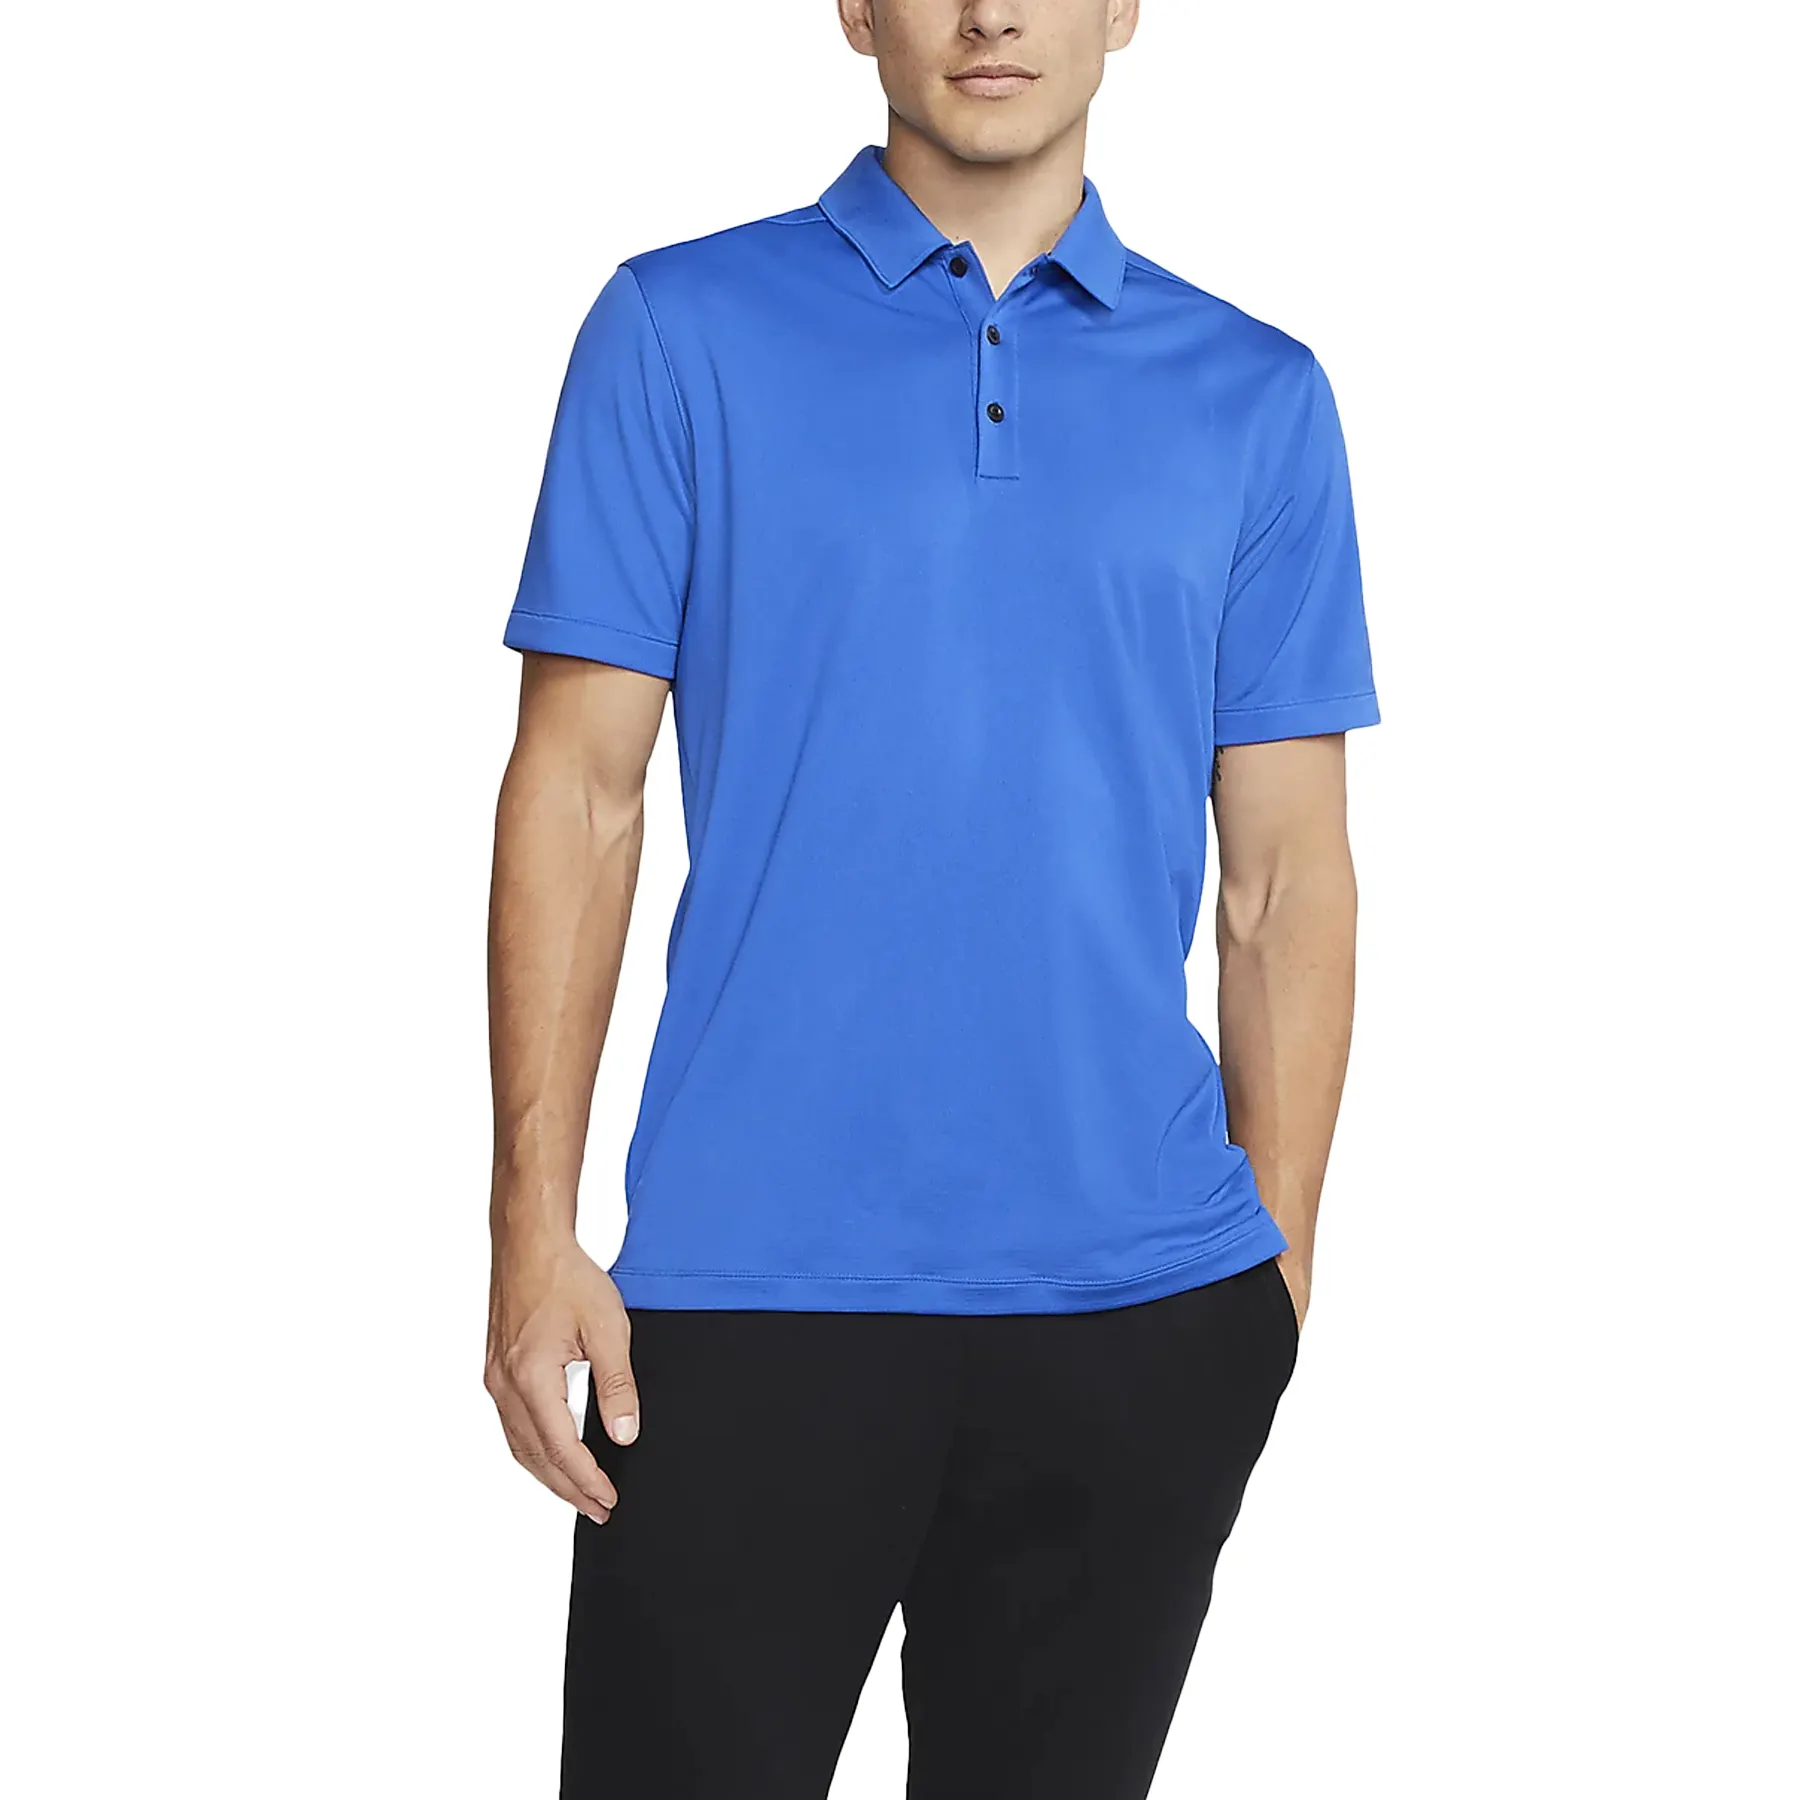 Prodotti di vendita calda all'ingrosso durevole colletto lama camicia da Golf maglia Polo per gli uomini di moda nuova moda Polo camicie